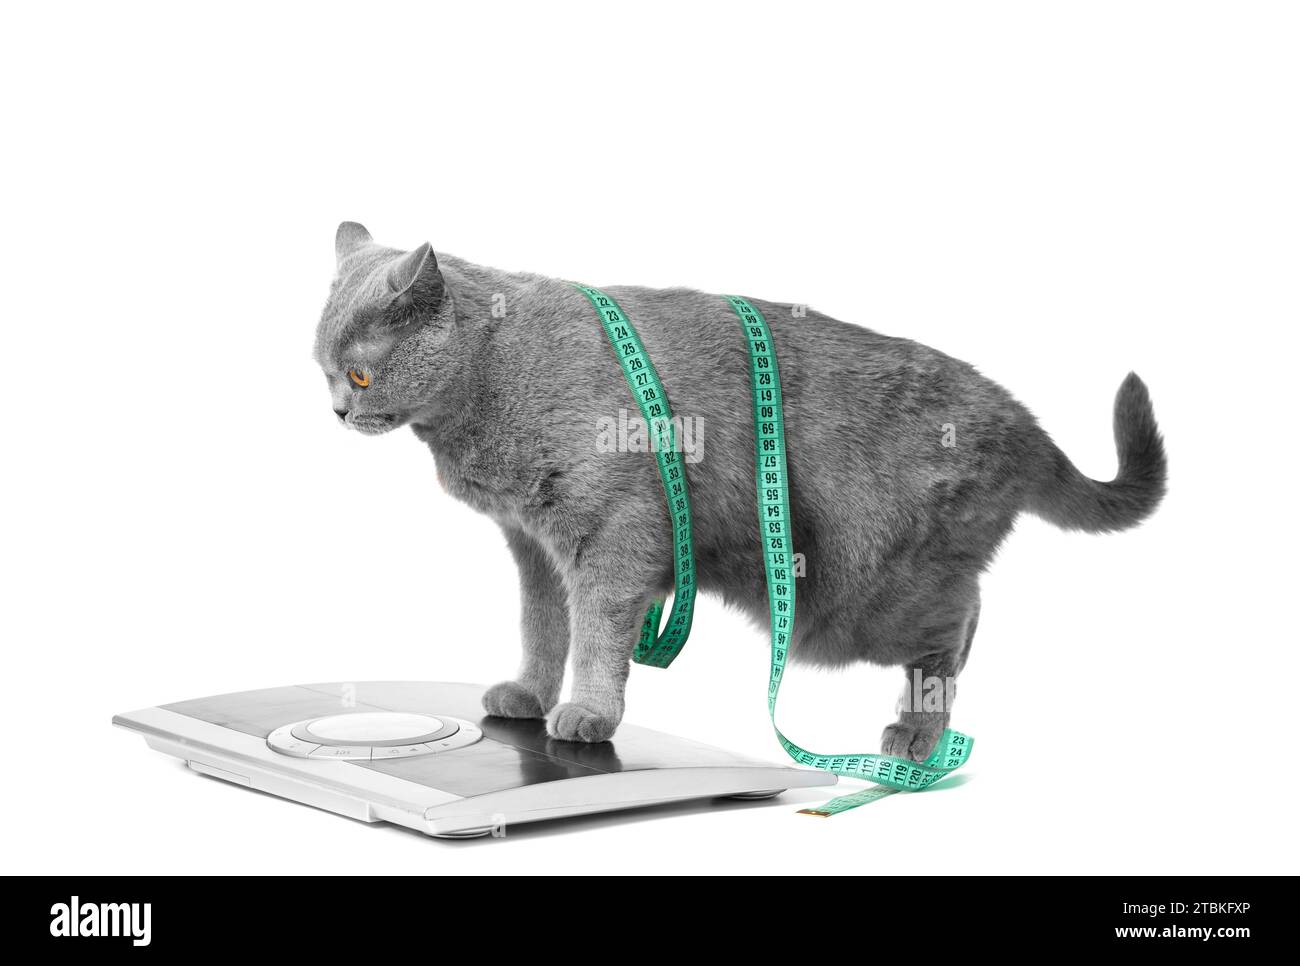 Eine britische Kurzhaar-blaue Katze steht auf einer Skala auf weißem Hintergrund, eingewickelt in ein Maßband. Konzept der Gewichtskontrolle, Gewichtsabnahme, Diät. Stockfoto